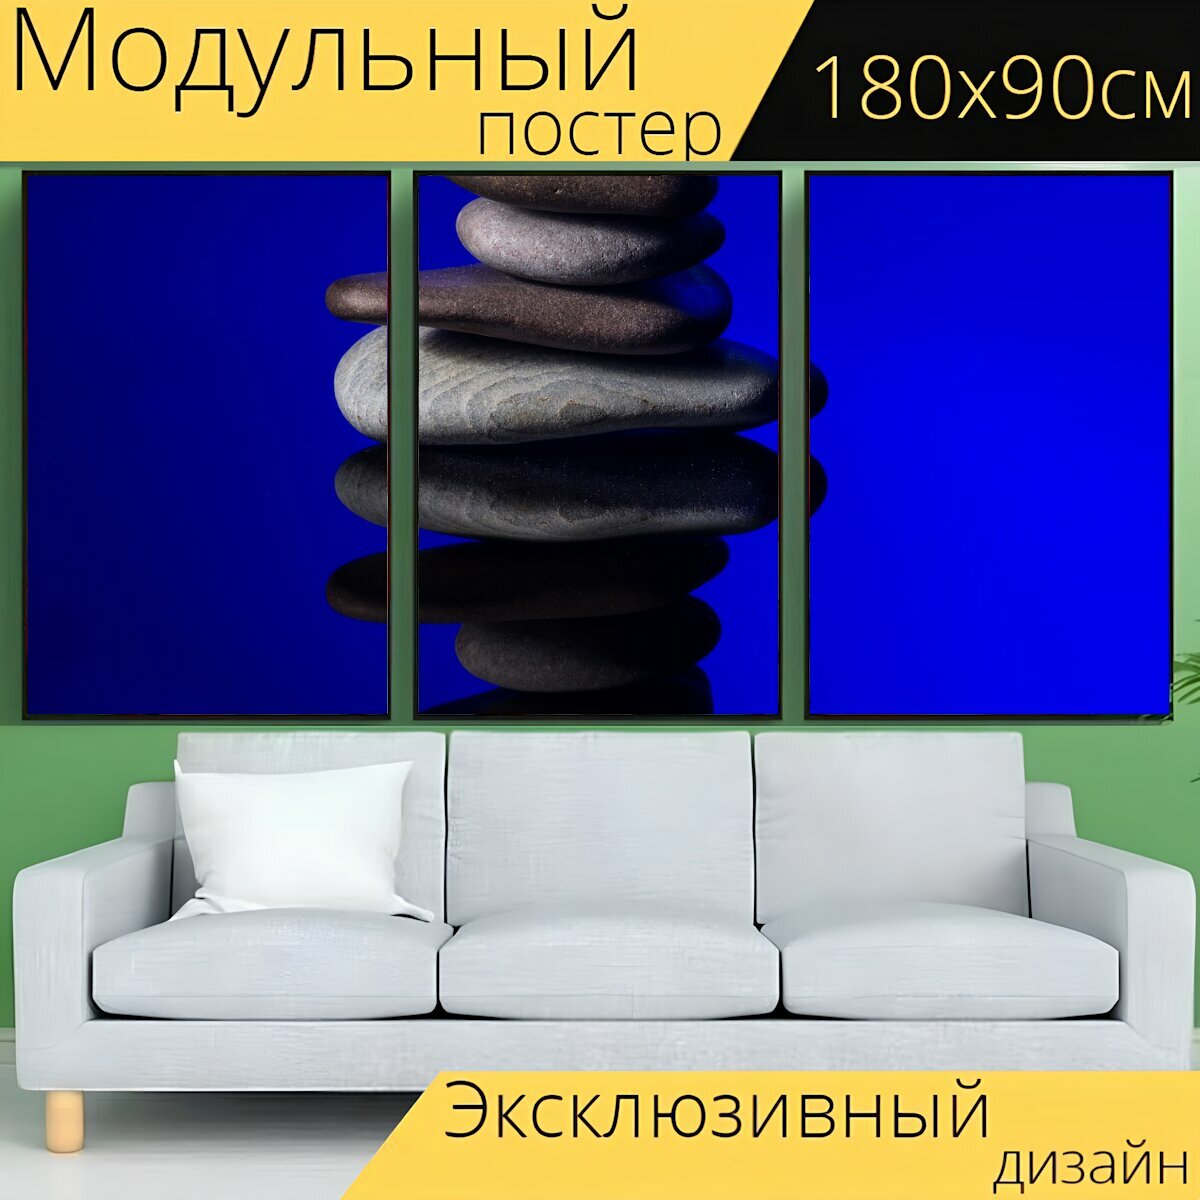 Модульный постер "Камни, отражение, зеркальное отображение" 180 x 90 см. для интерьера